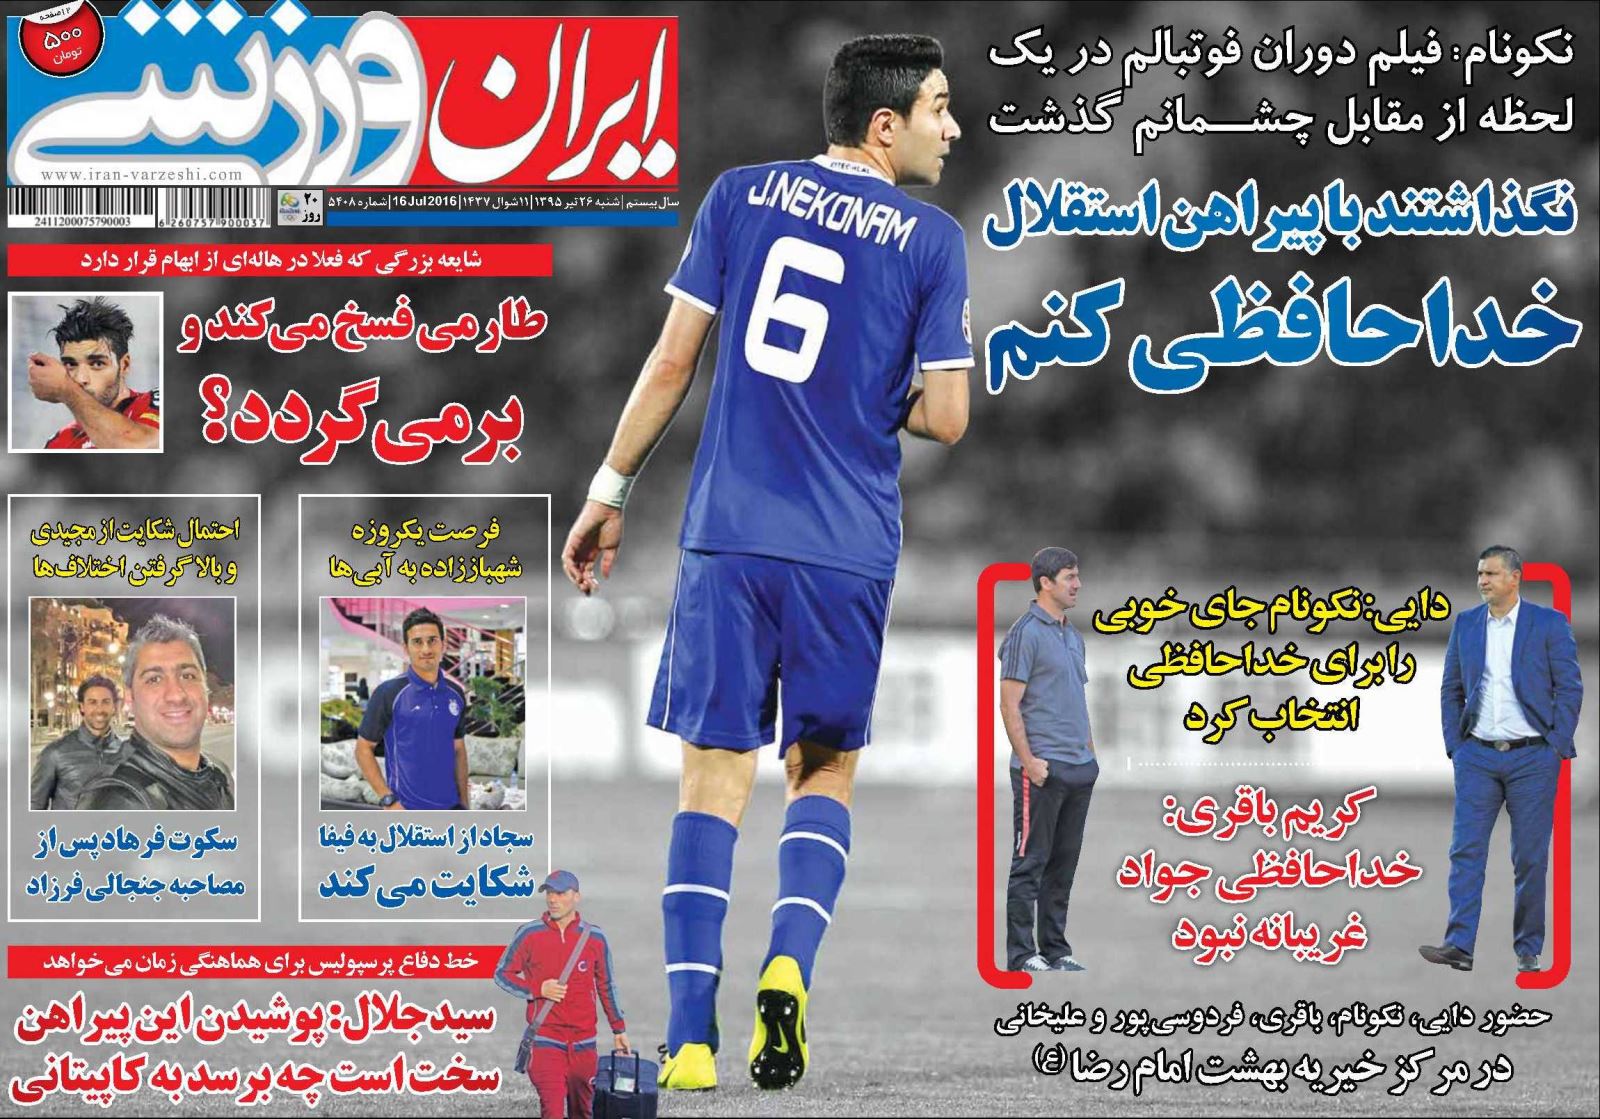 جلد ایران ورزشی/شنبه 26 تیر 95